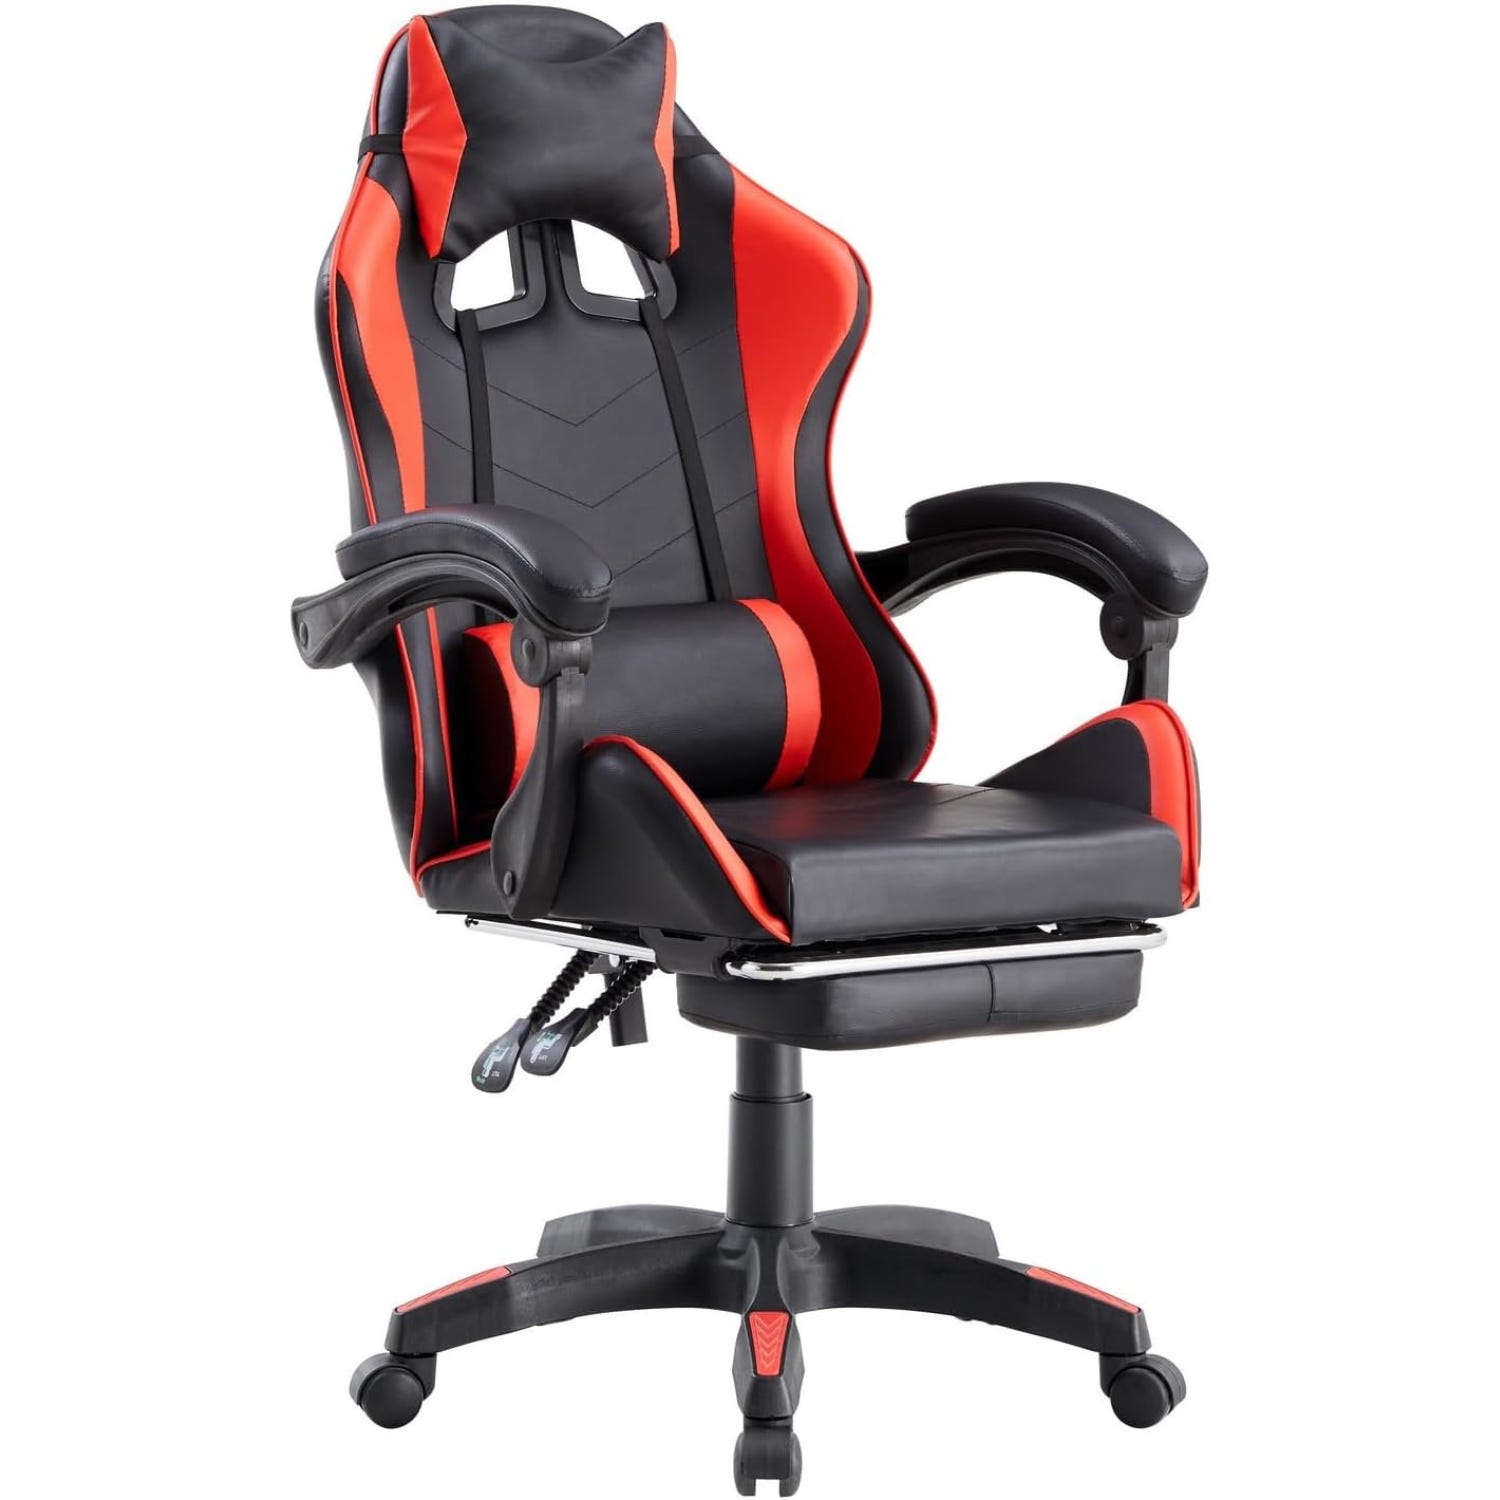 Poltrona sedia gaming rossa e nera ergonomica con schienale